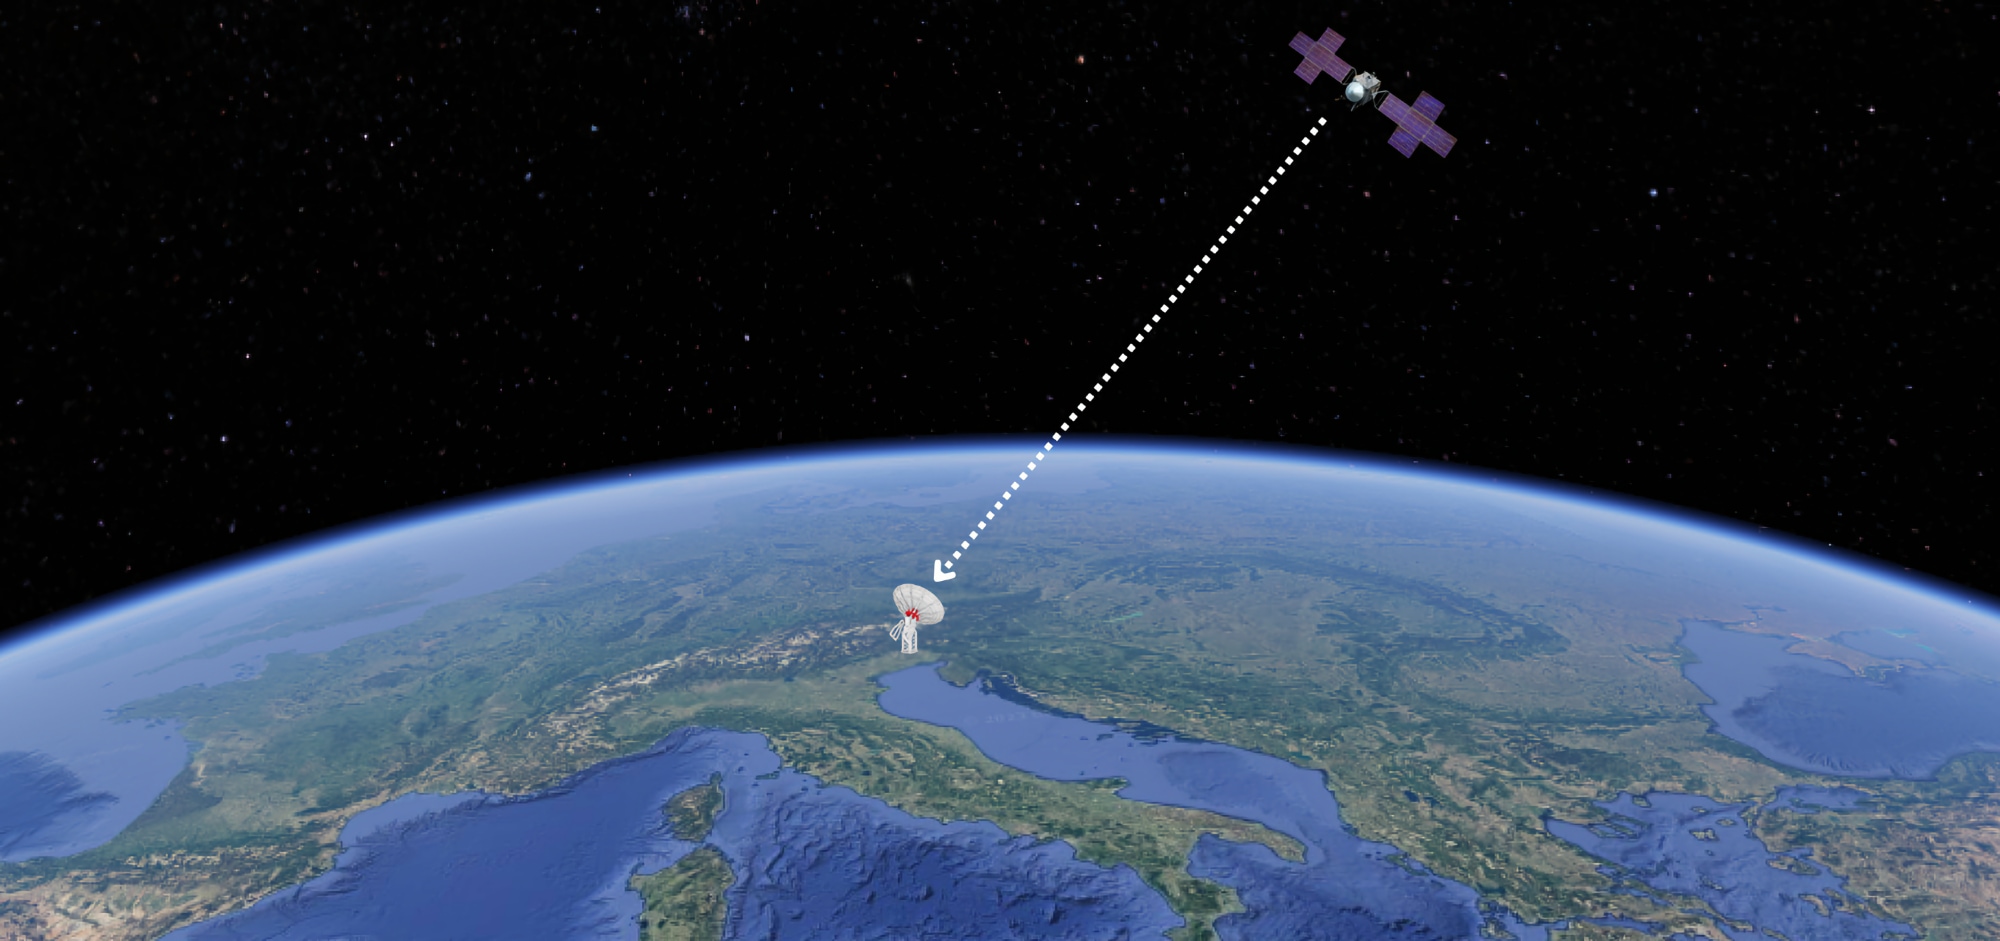 Come funziona una stazione di terra per comunicazione spaziale? In base al passaggio del satellite, è necessario puntare con precisione le antenne di una stazione di terra.